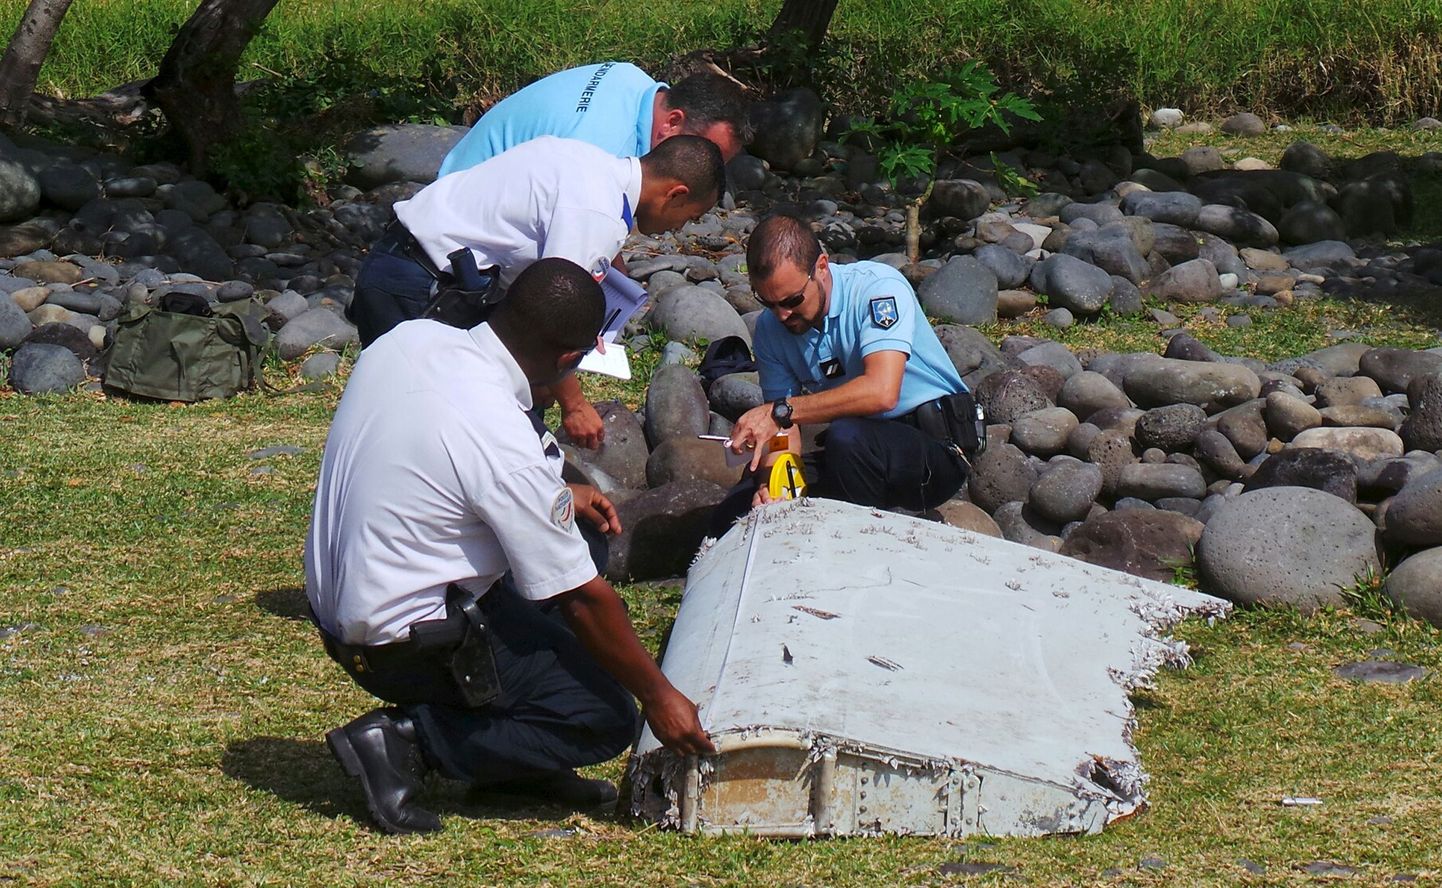 Prantsuse gendarmerie ja politsei esindajad uurivad Reunioni saarel kaldale uhtunud vrakitükki.